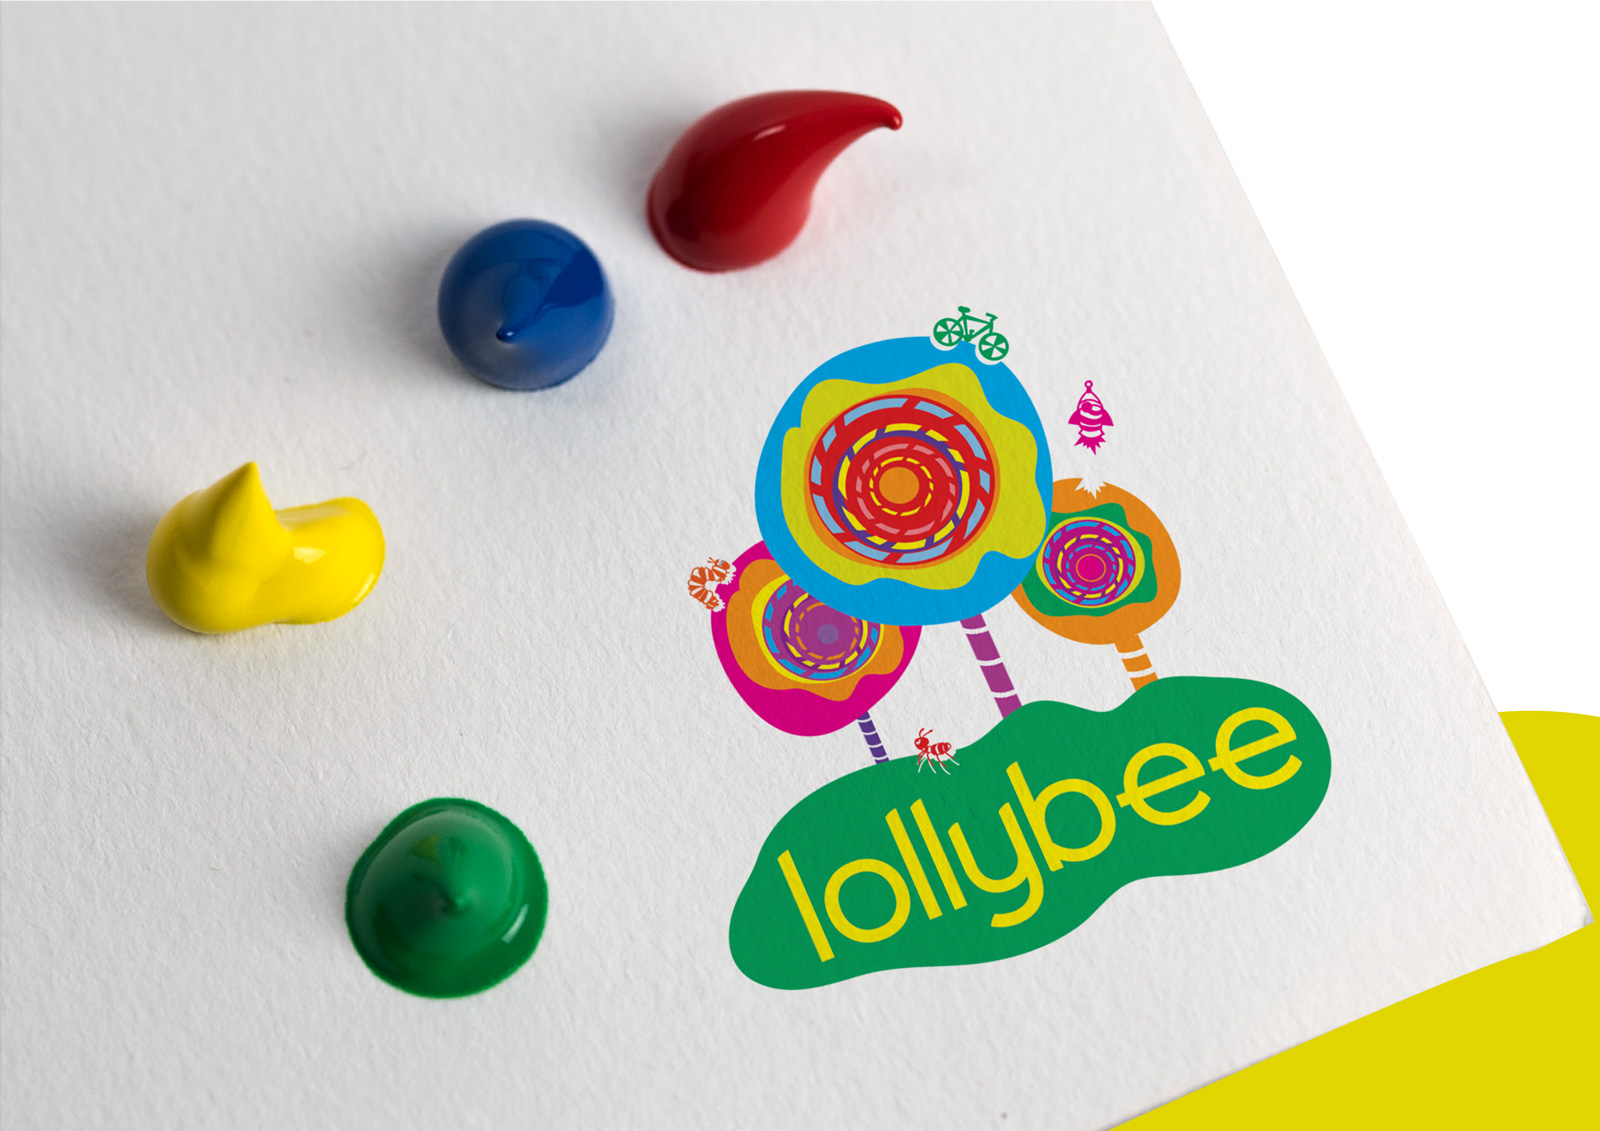 Lollybee